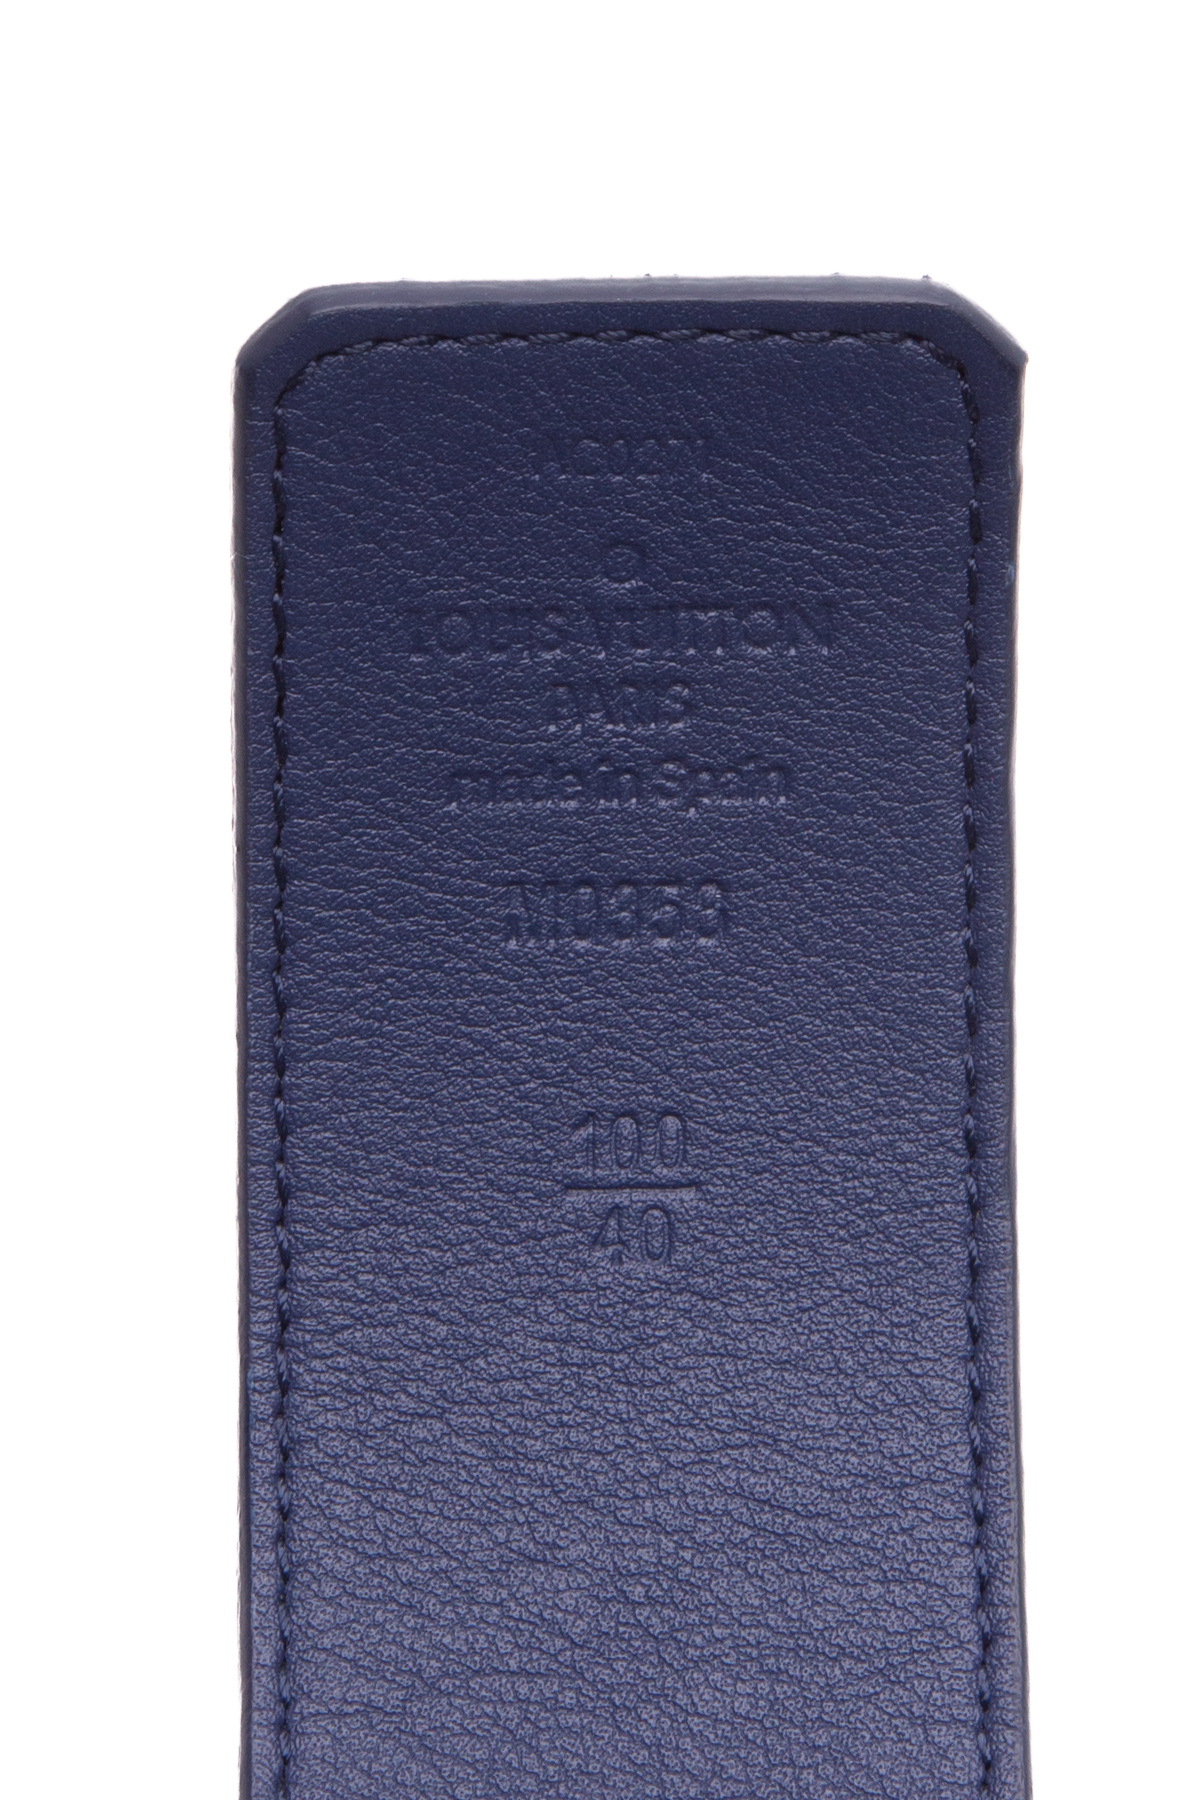 Louis Vuitton Reversible LV Watercolor Belt